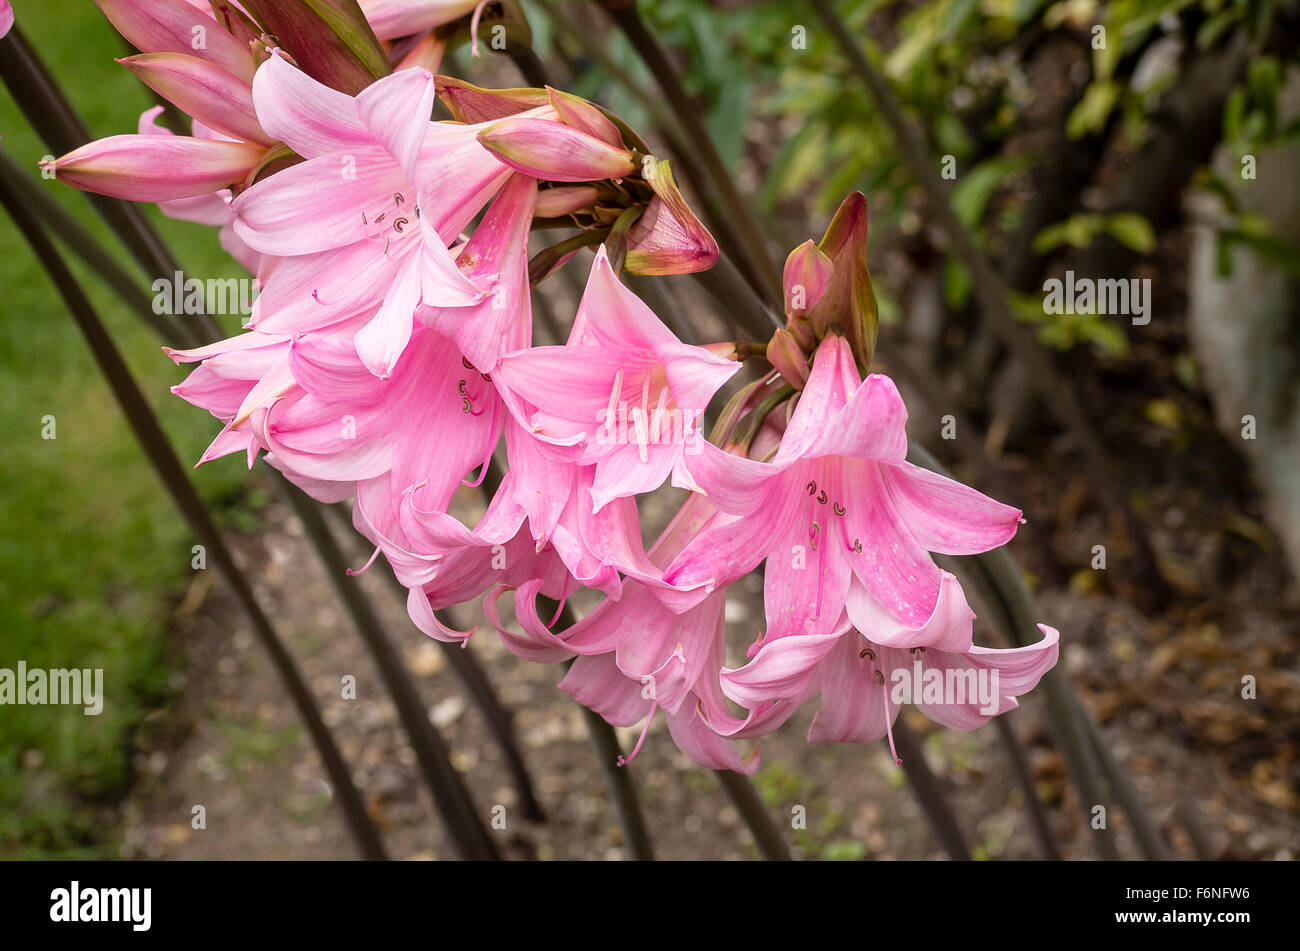 Pink amaryllis belladonna flowers in autumn Stock Photo